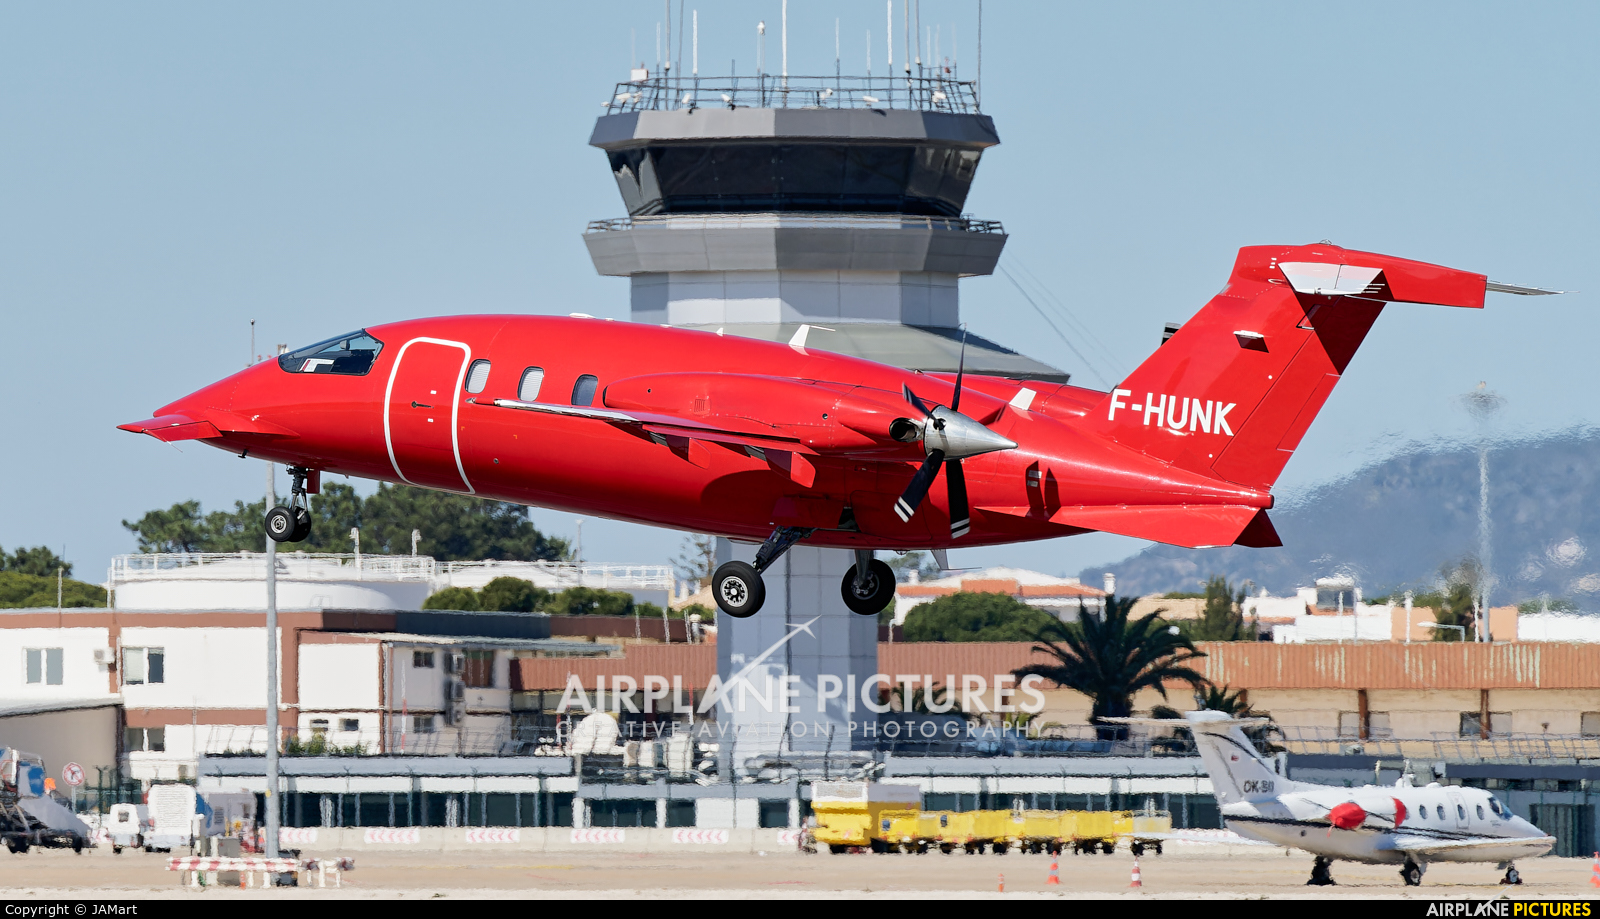 Oyonnair F-HUNK aircraft at Faro